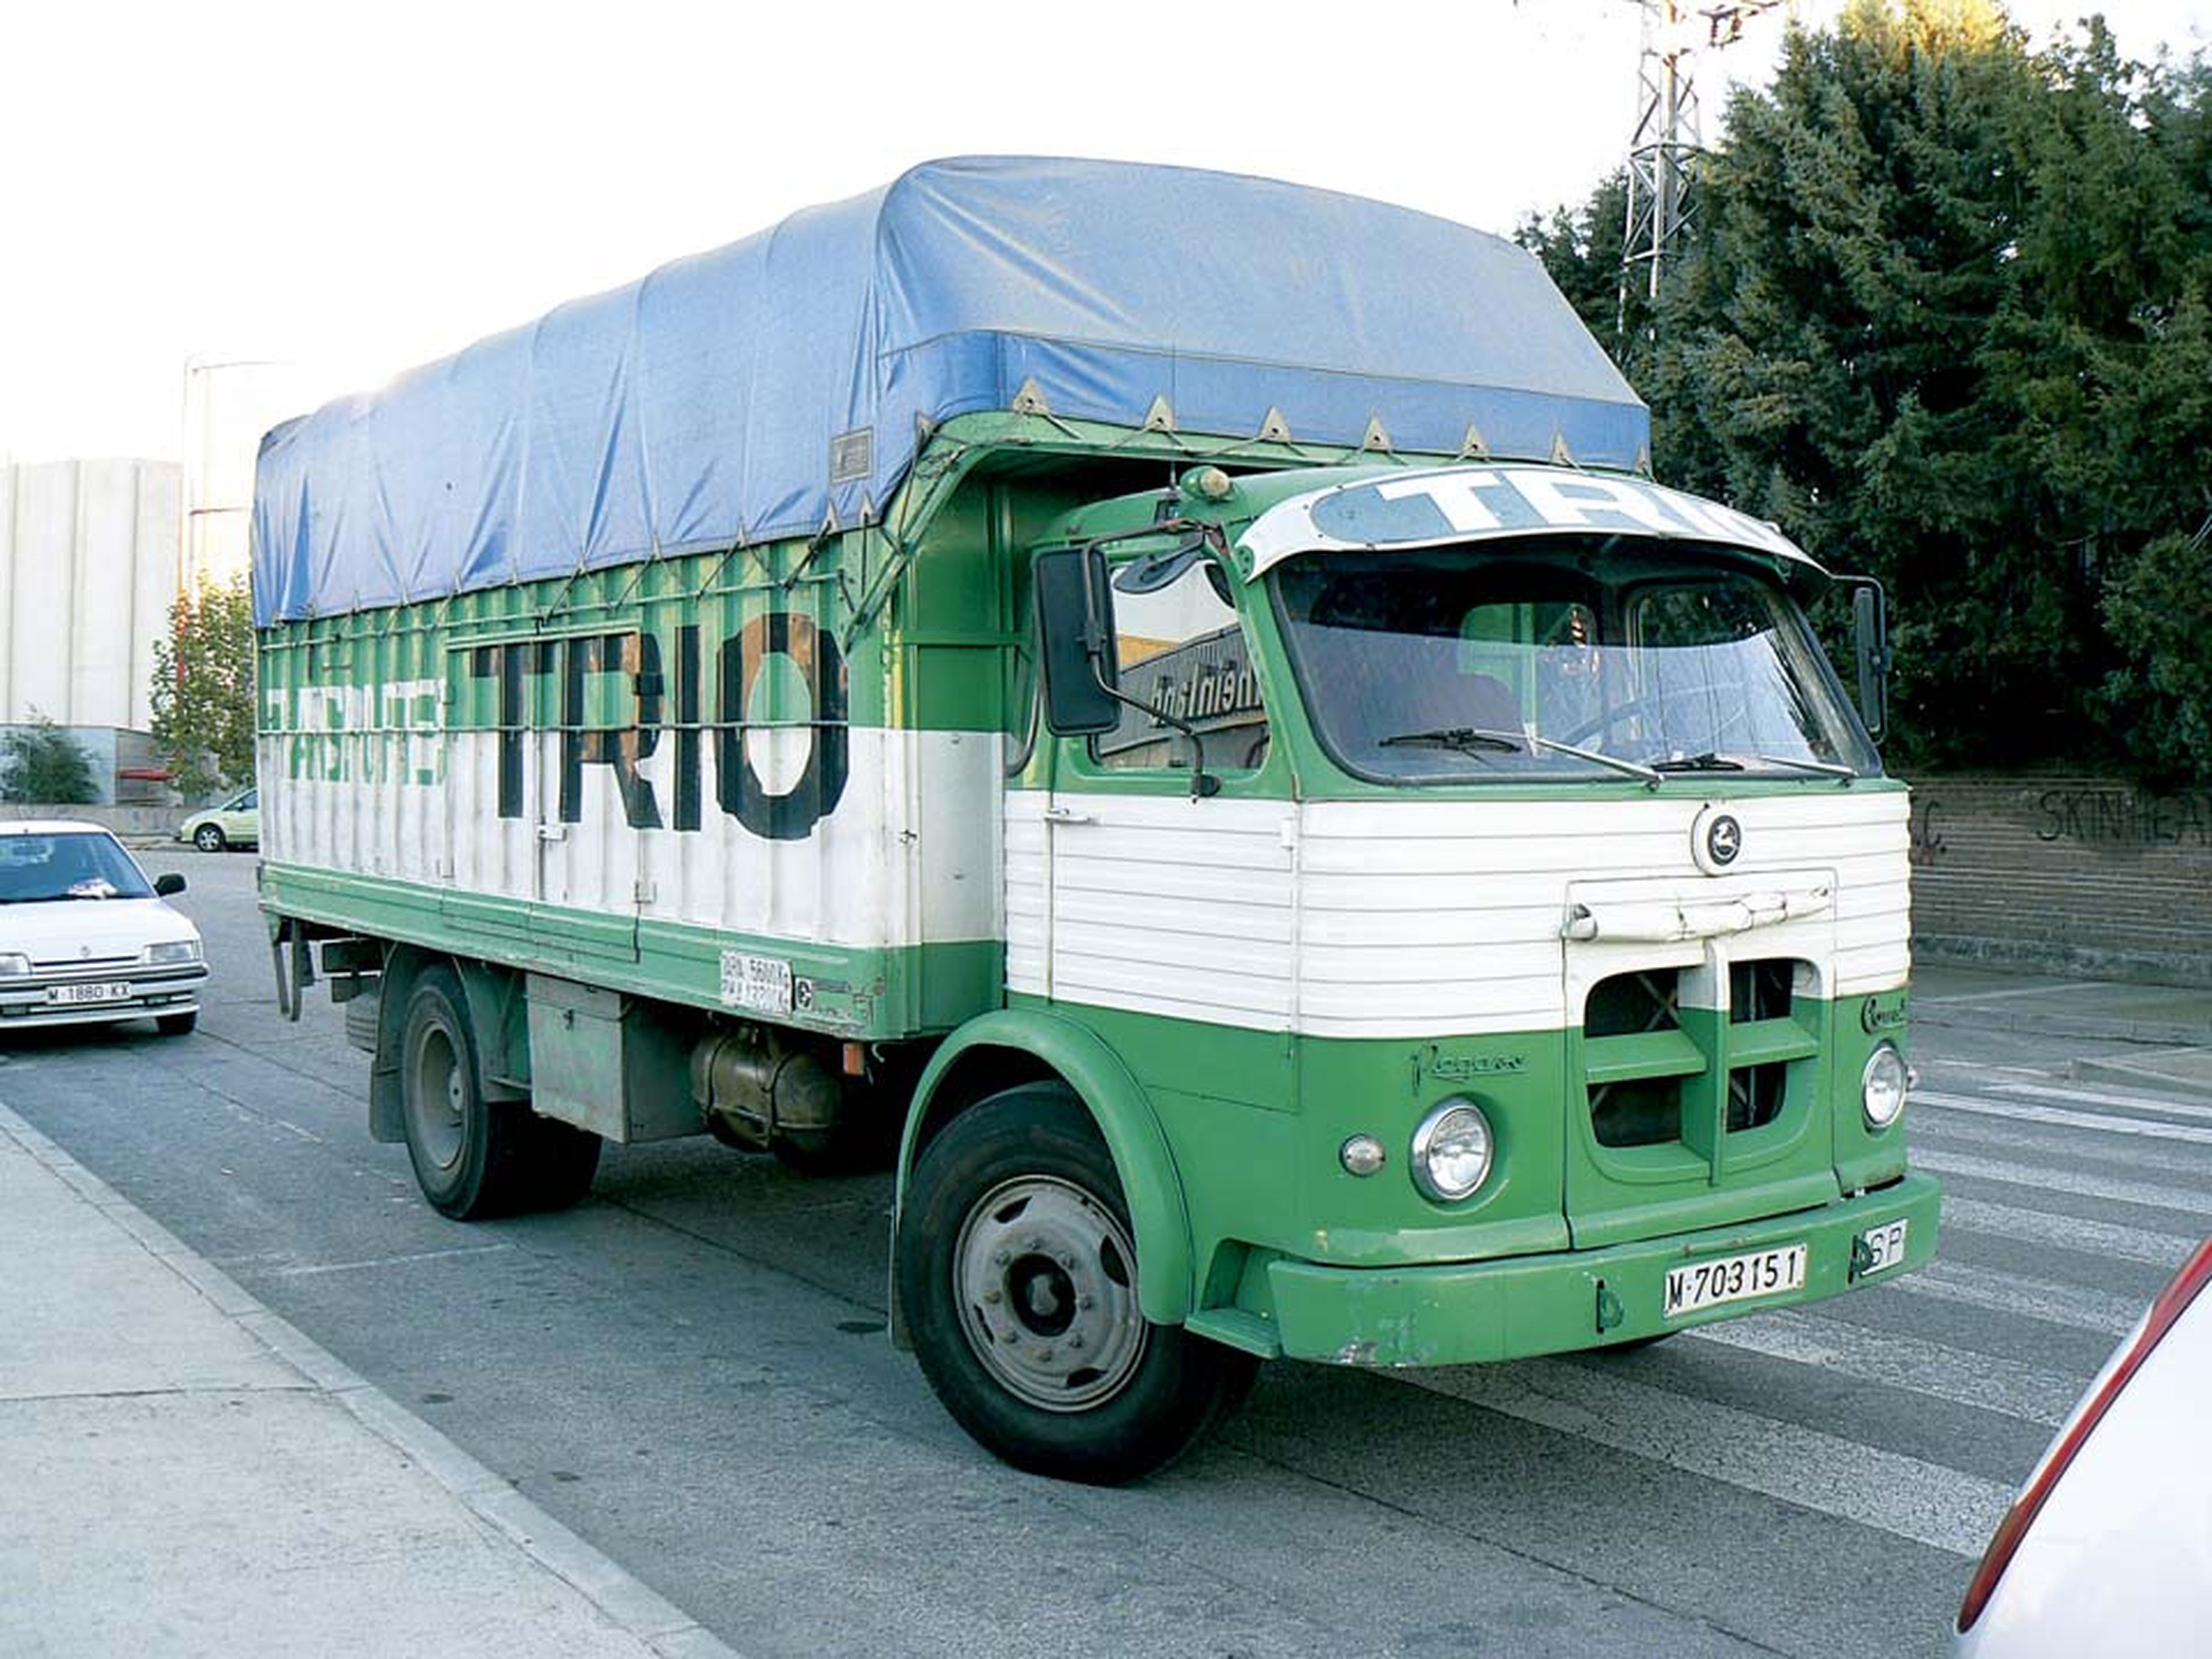 La increíble historia de los camiones Pegaso, que cumplen 75 años